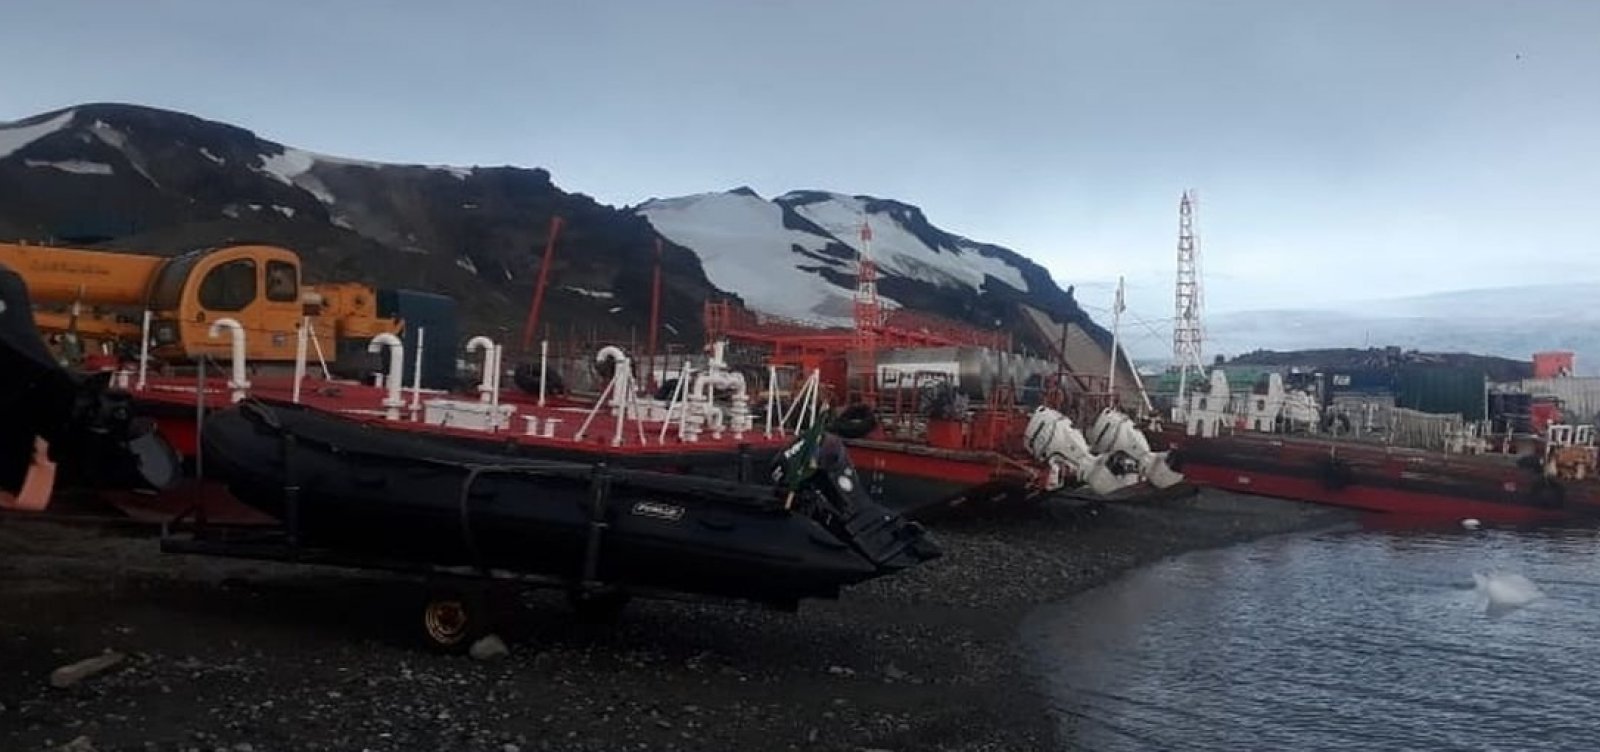 Após incêndio, base de pesquisa na Antártica será reinaugurada hoje